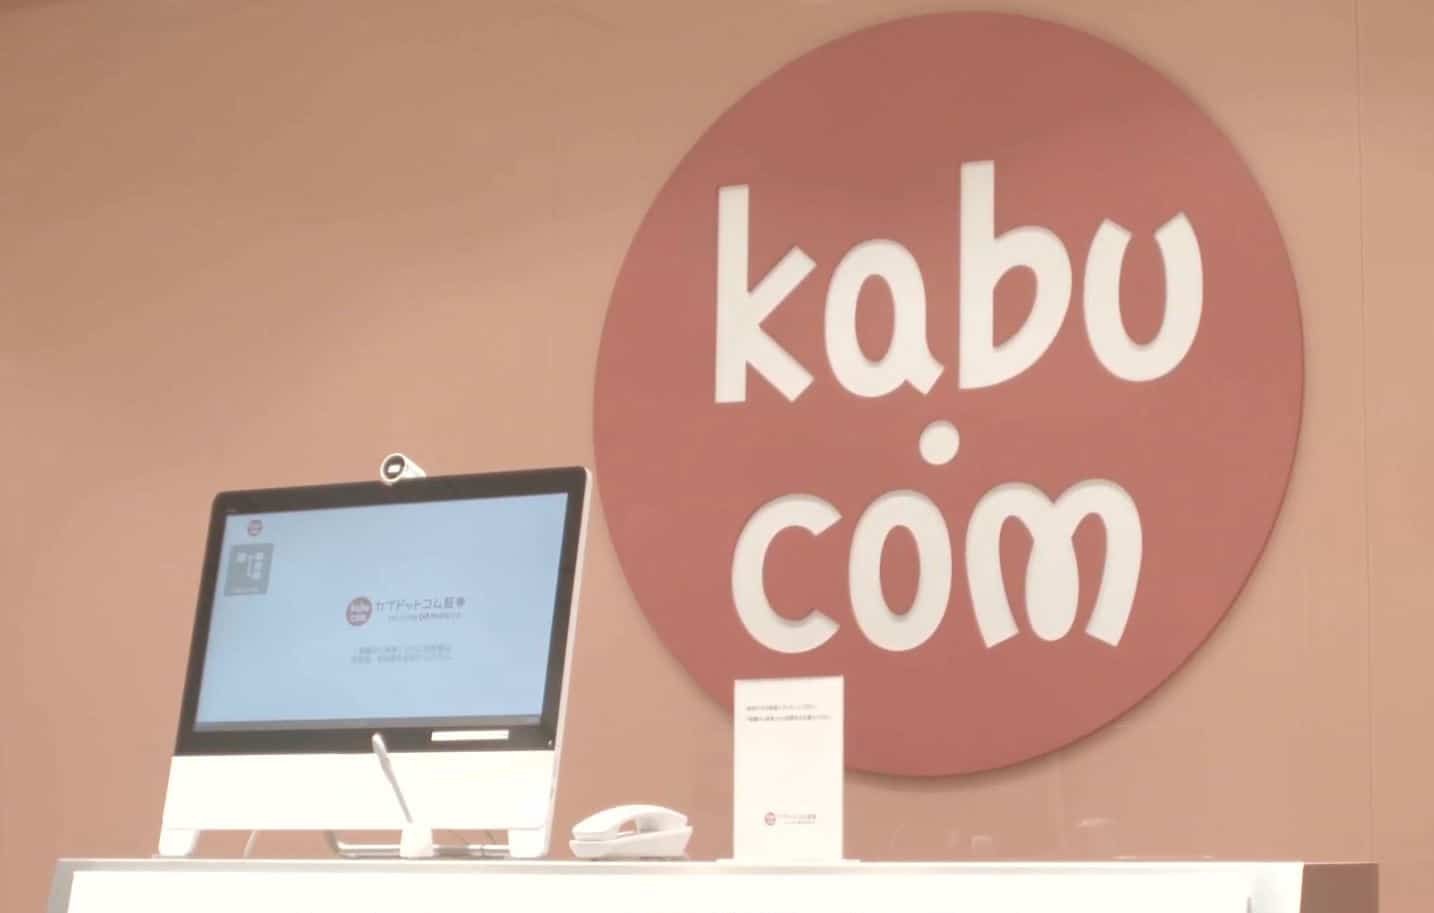 Kabu com